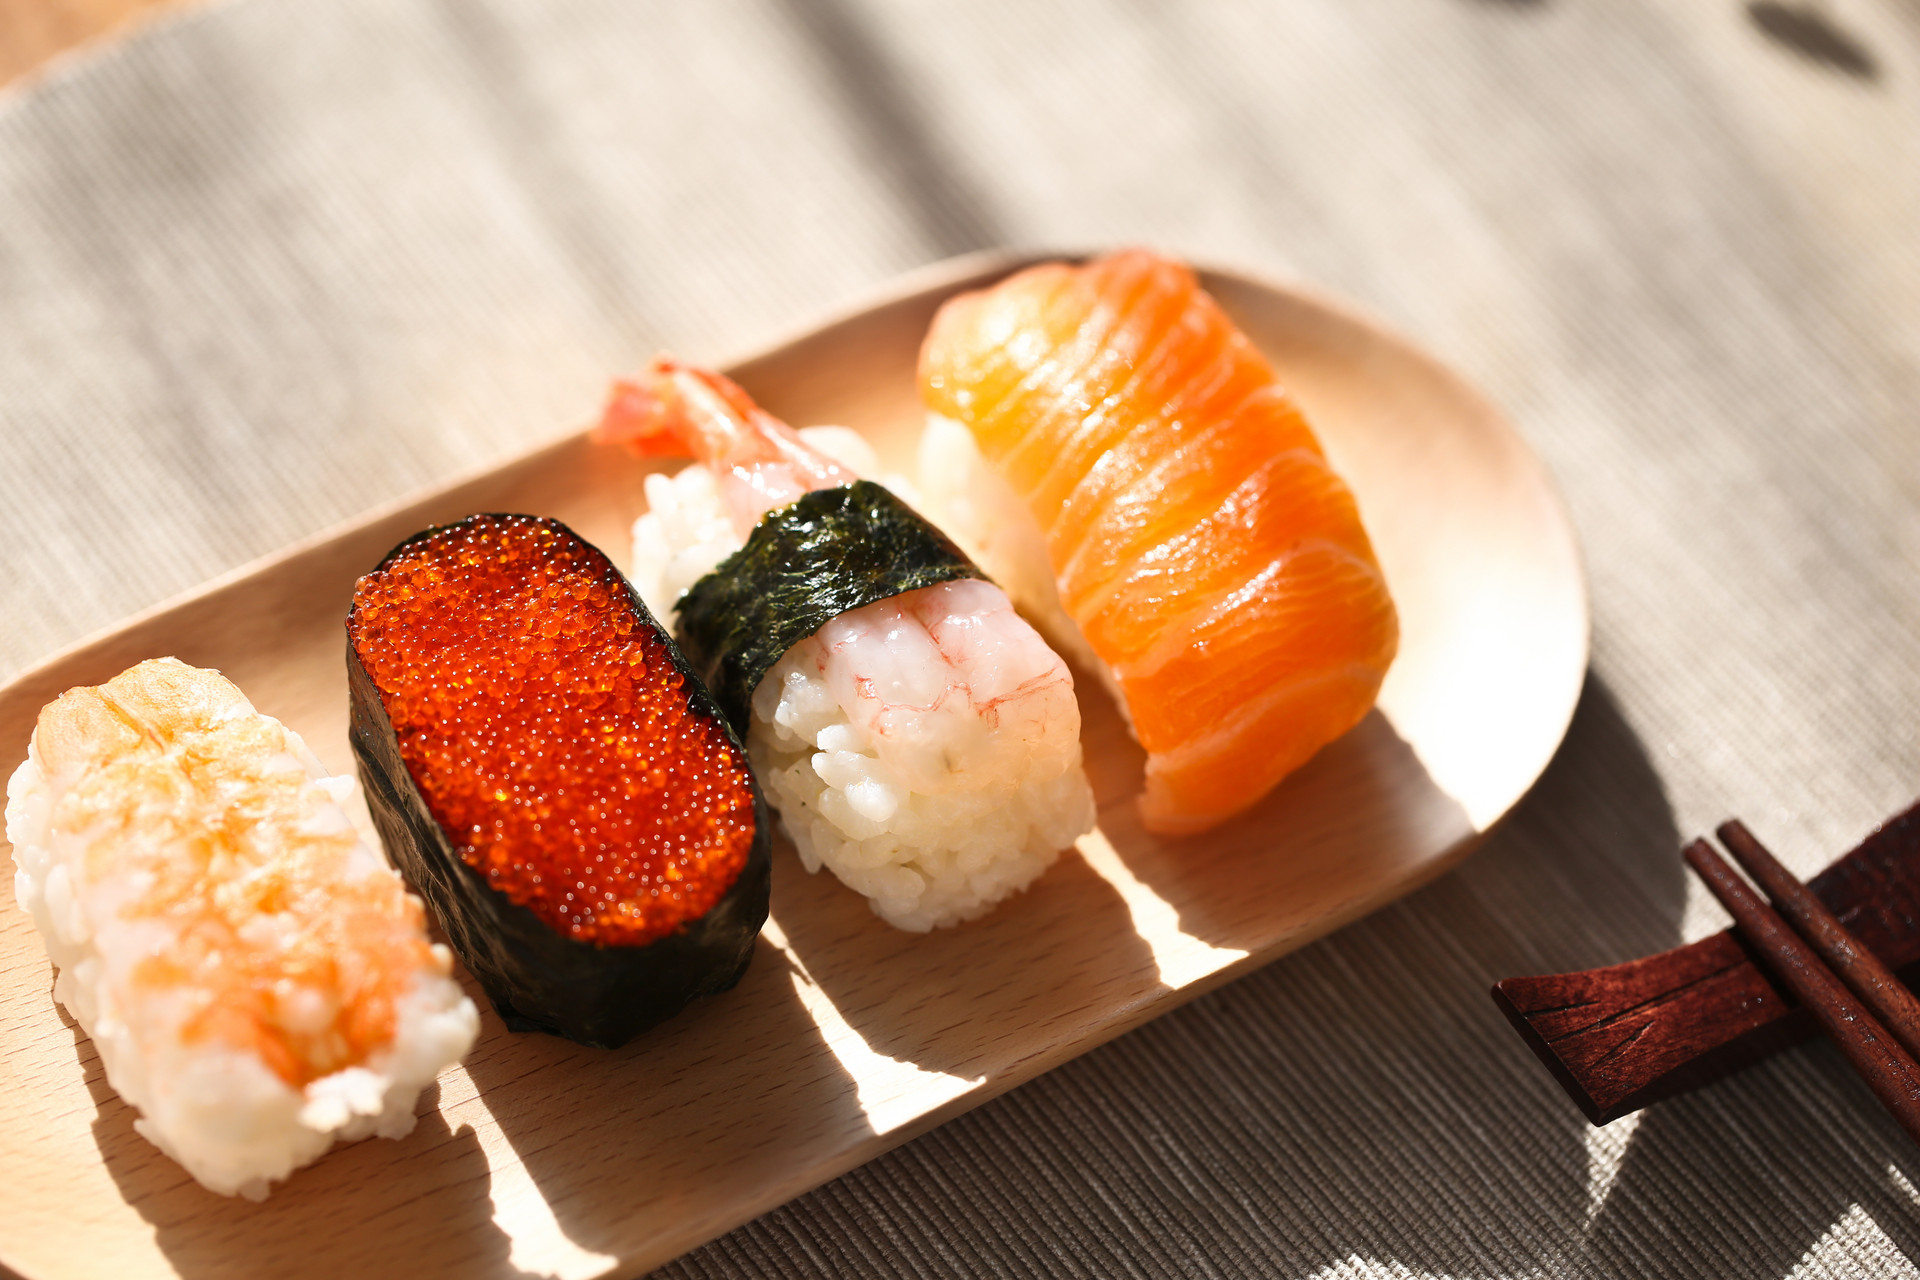 寿司怎么吃不发胖 四招教你避开高热量陷阱